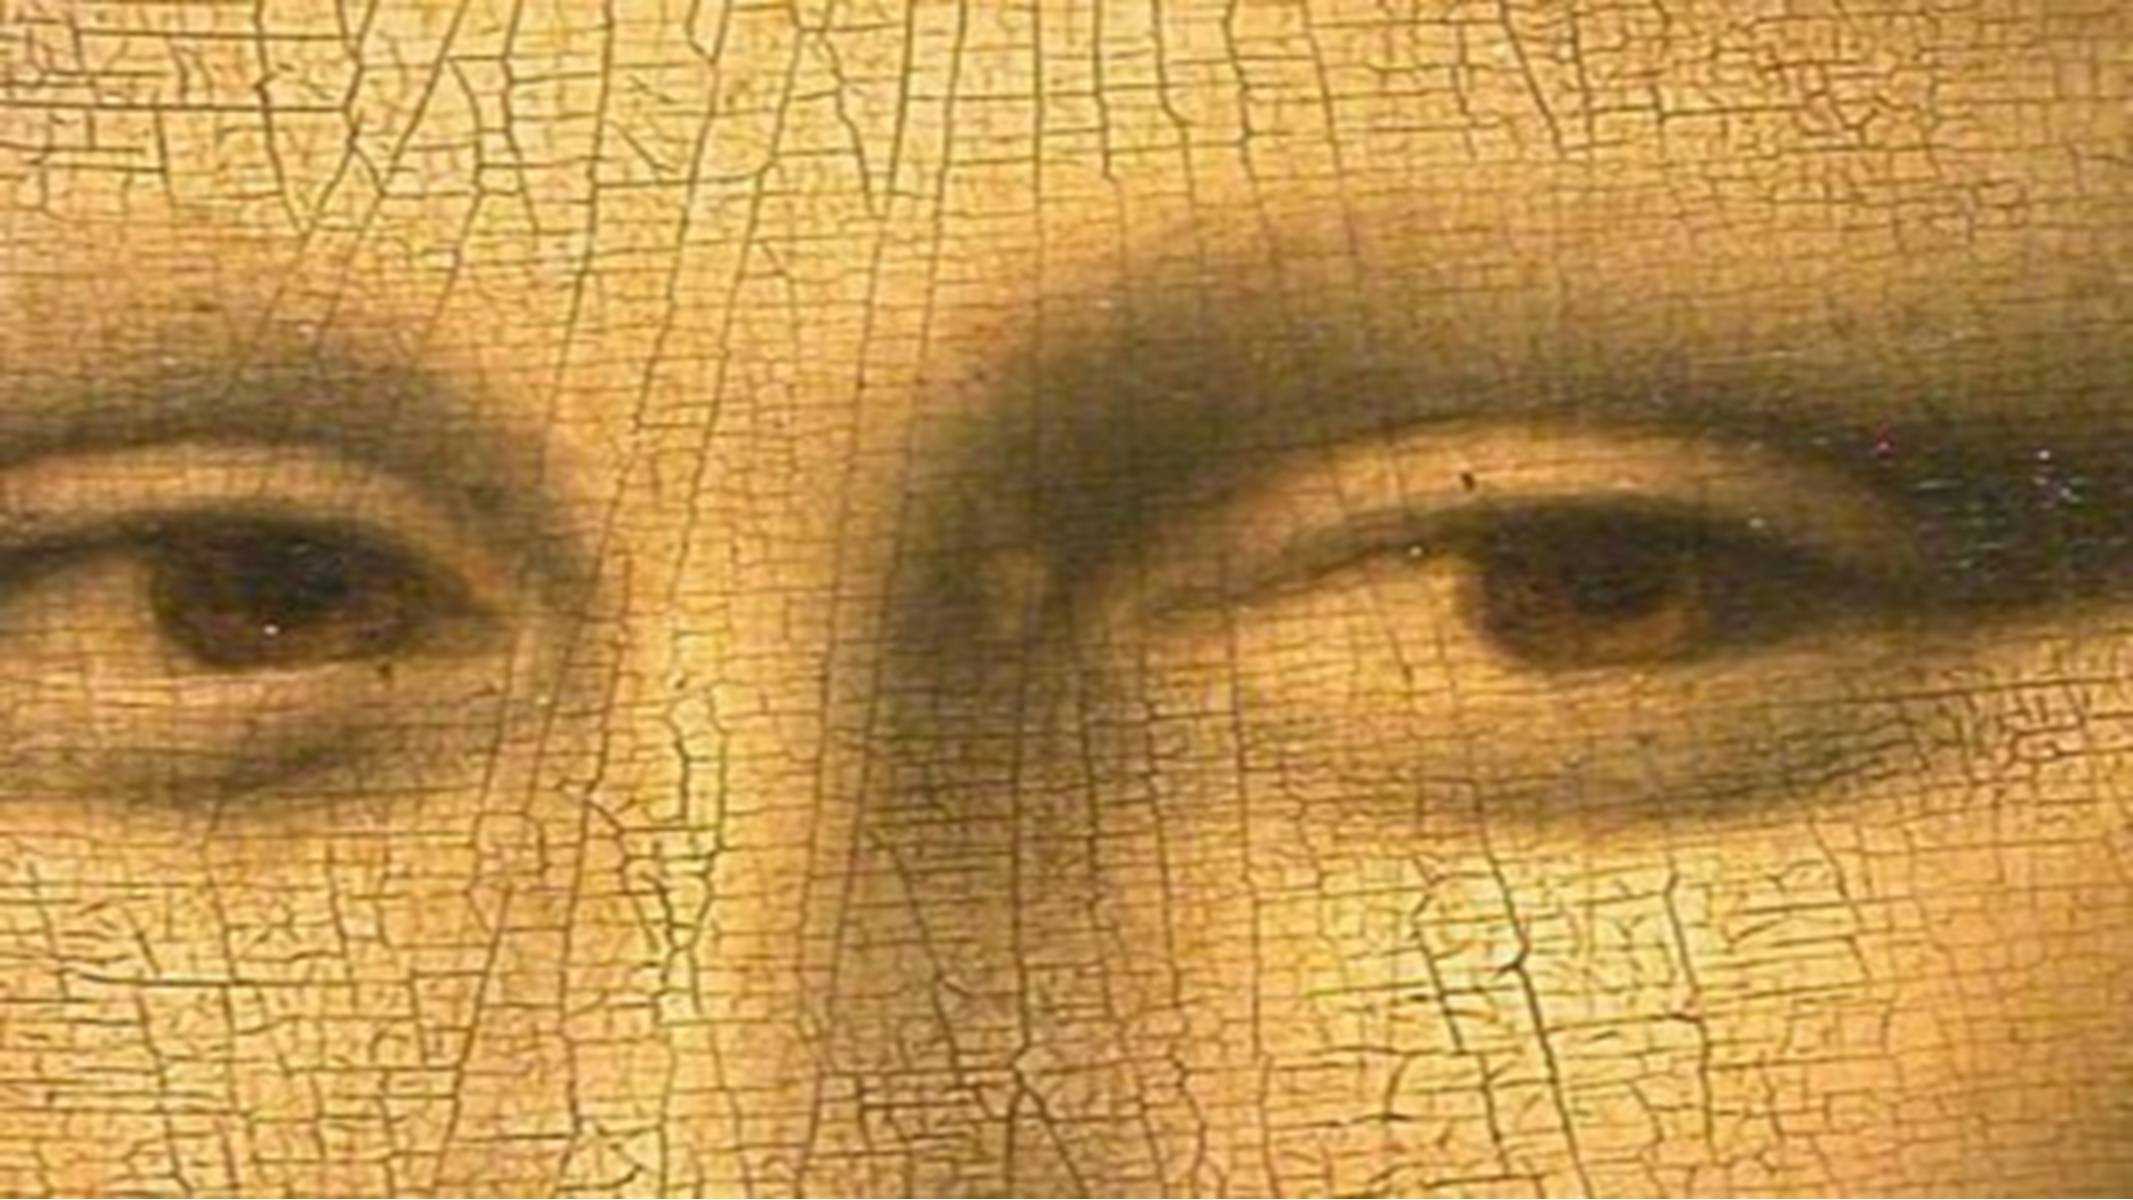 Леонардо да Винчи Мона Лиза глаза